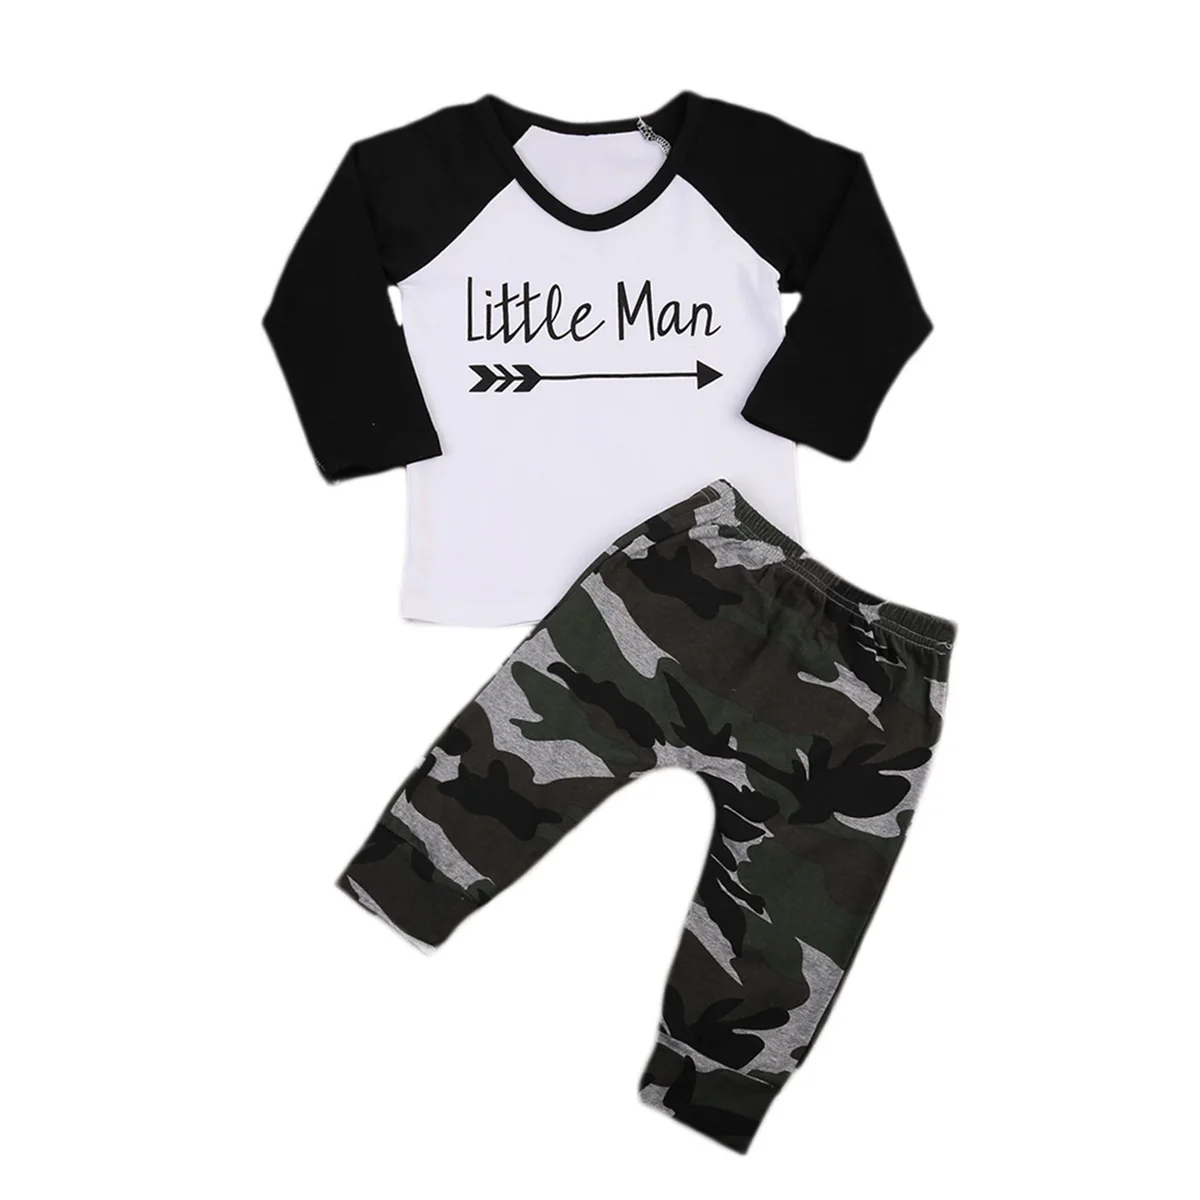 Комплект из 2 предметов «Little Man» Одежда для новорожденных малышей длинный рукав и v-образный вырез Футболка Топы + камуфляжные штаны Наряд